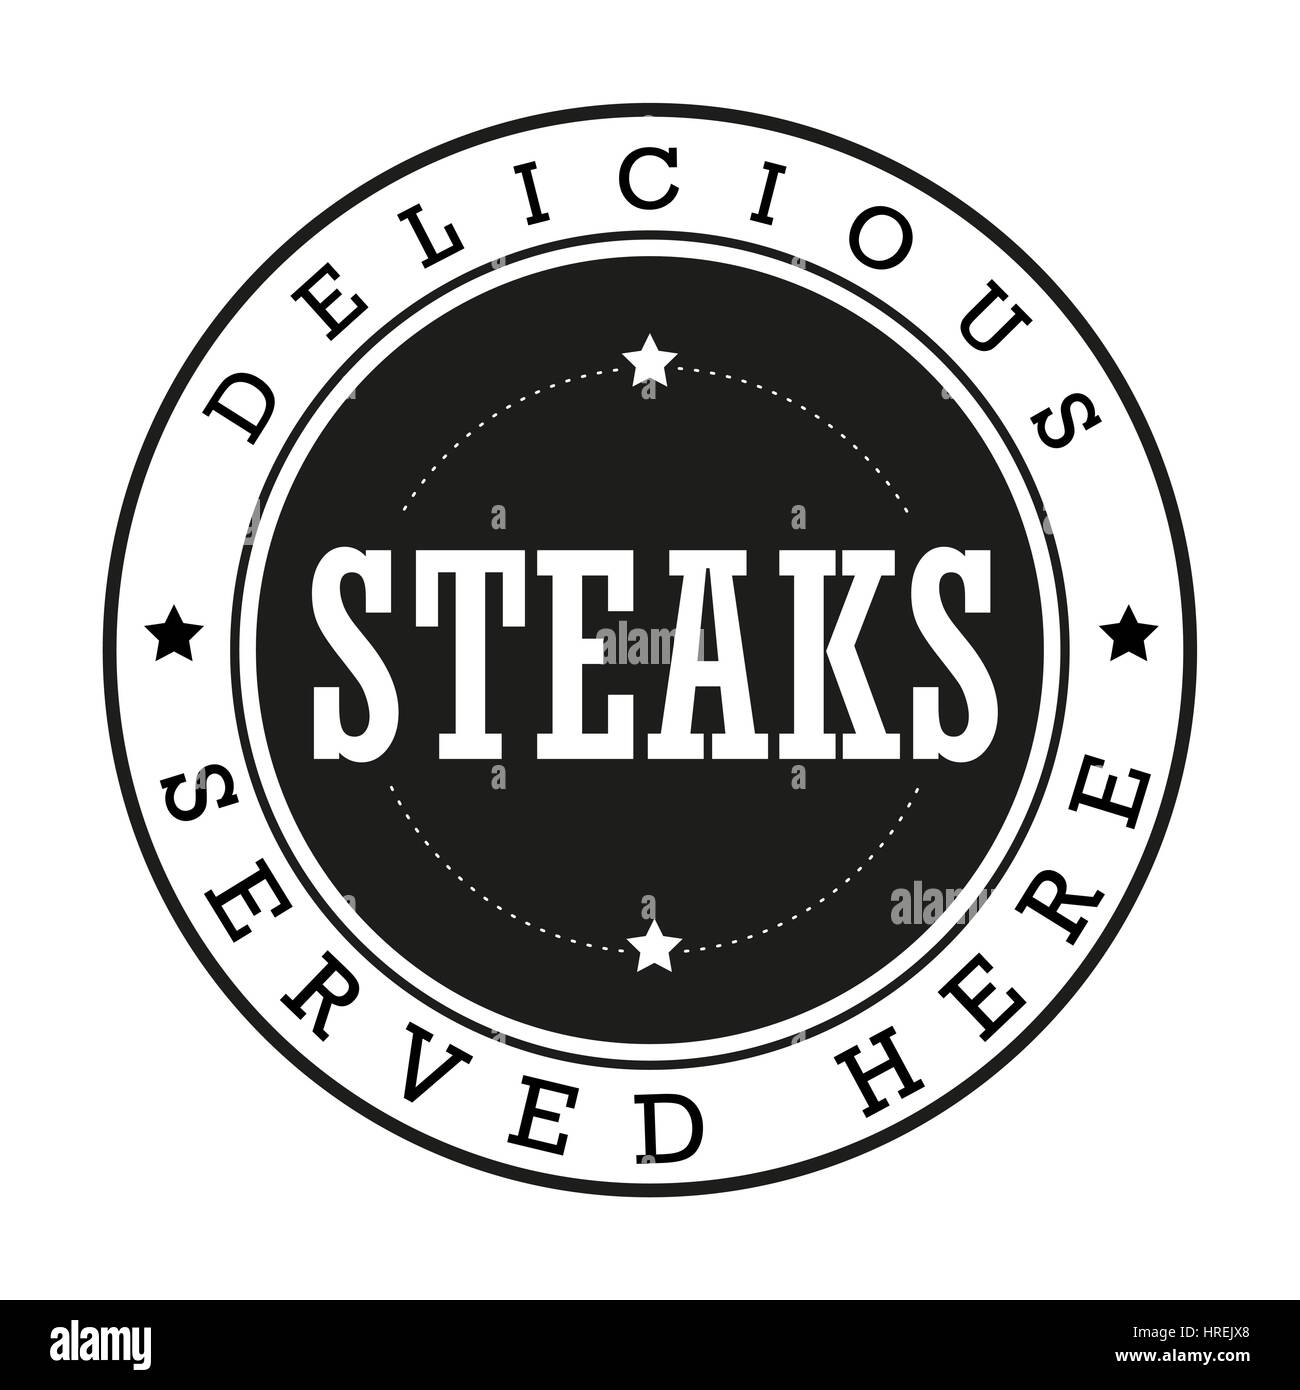 Steaks Vintage Stempel logo Stock Vektor